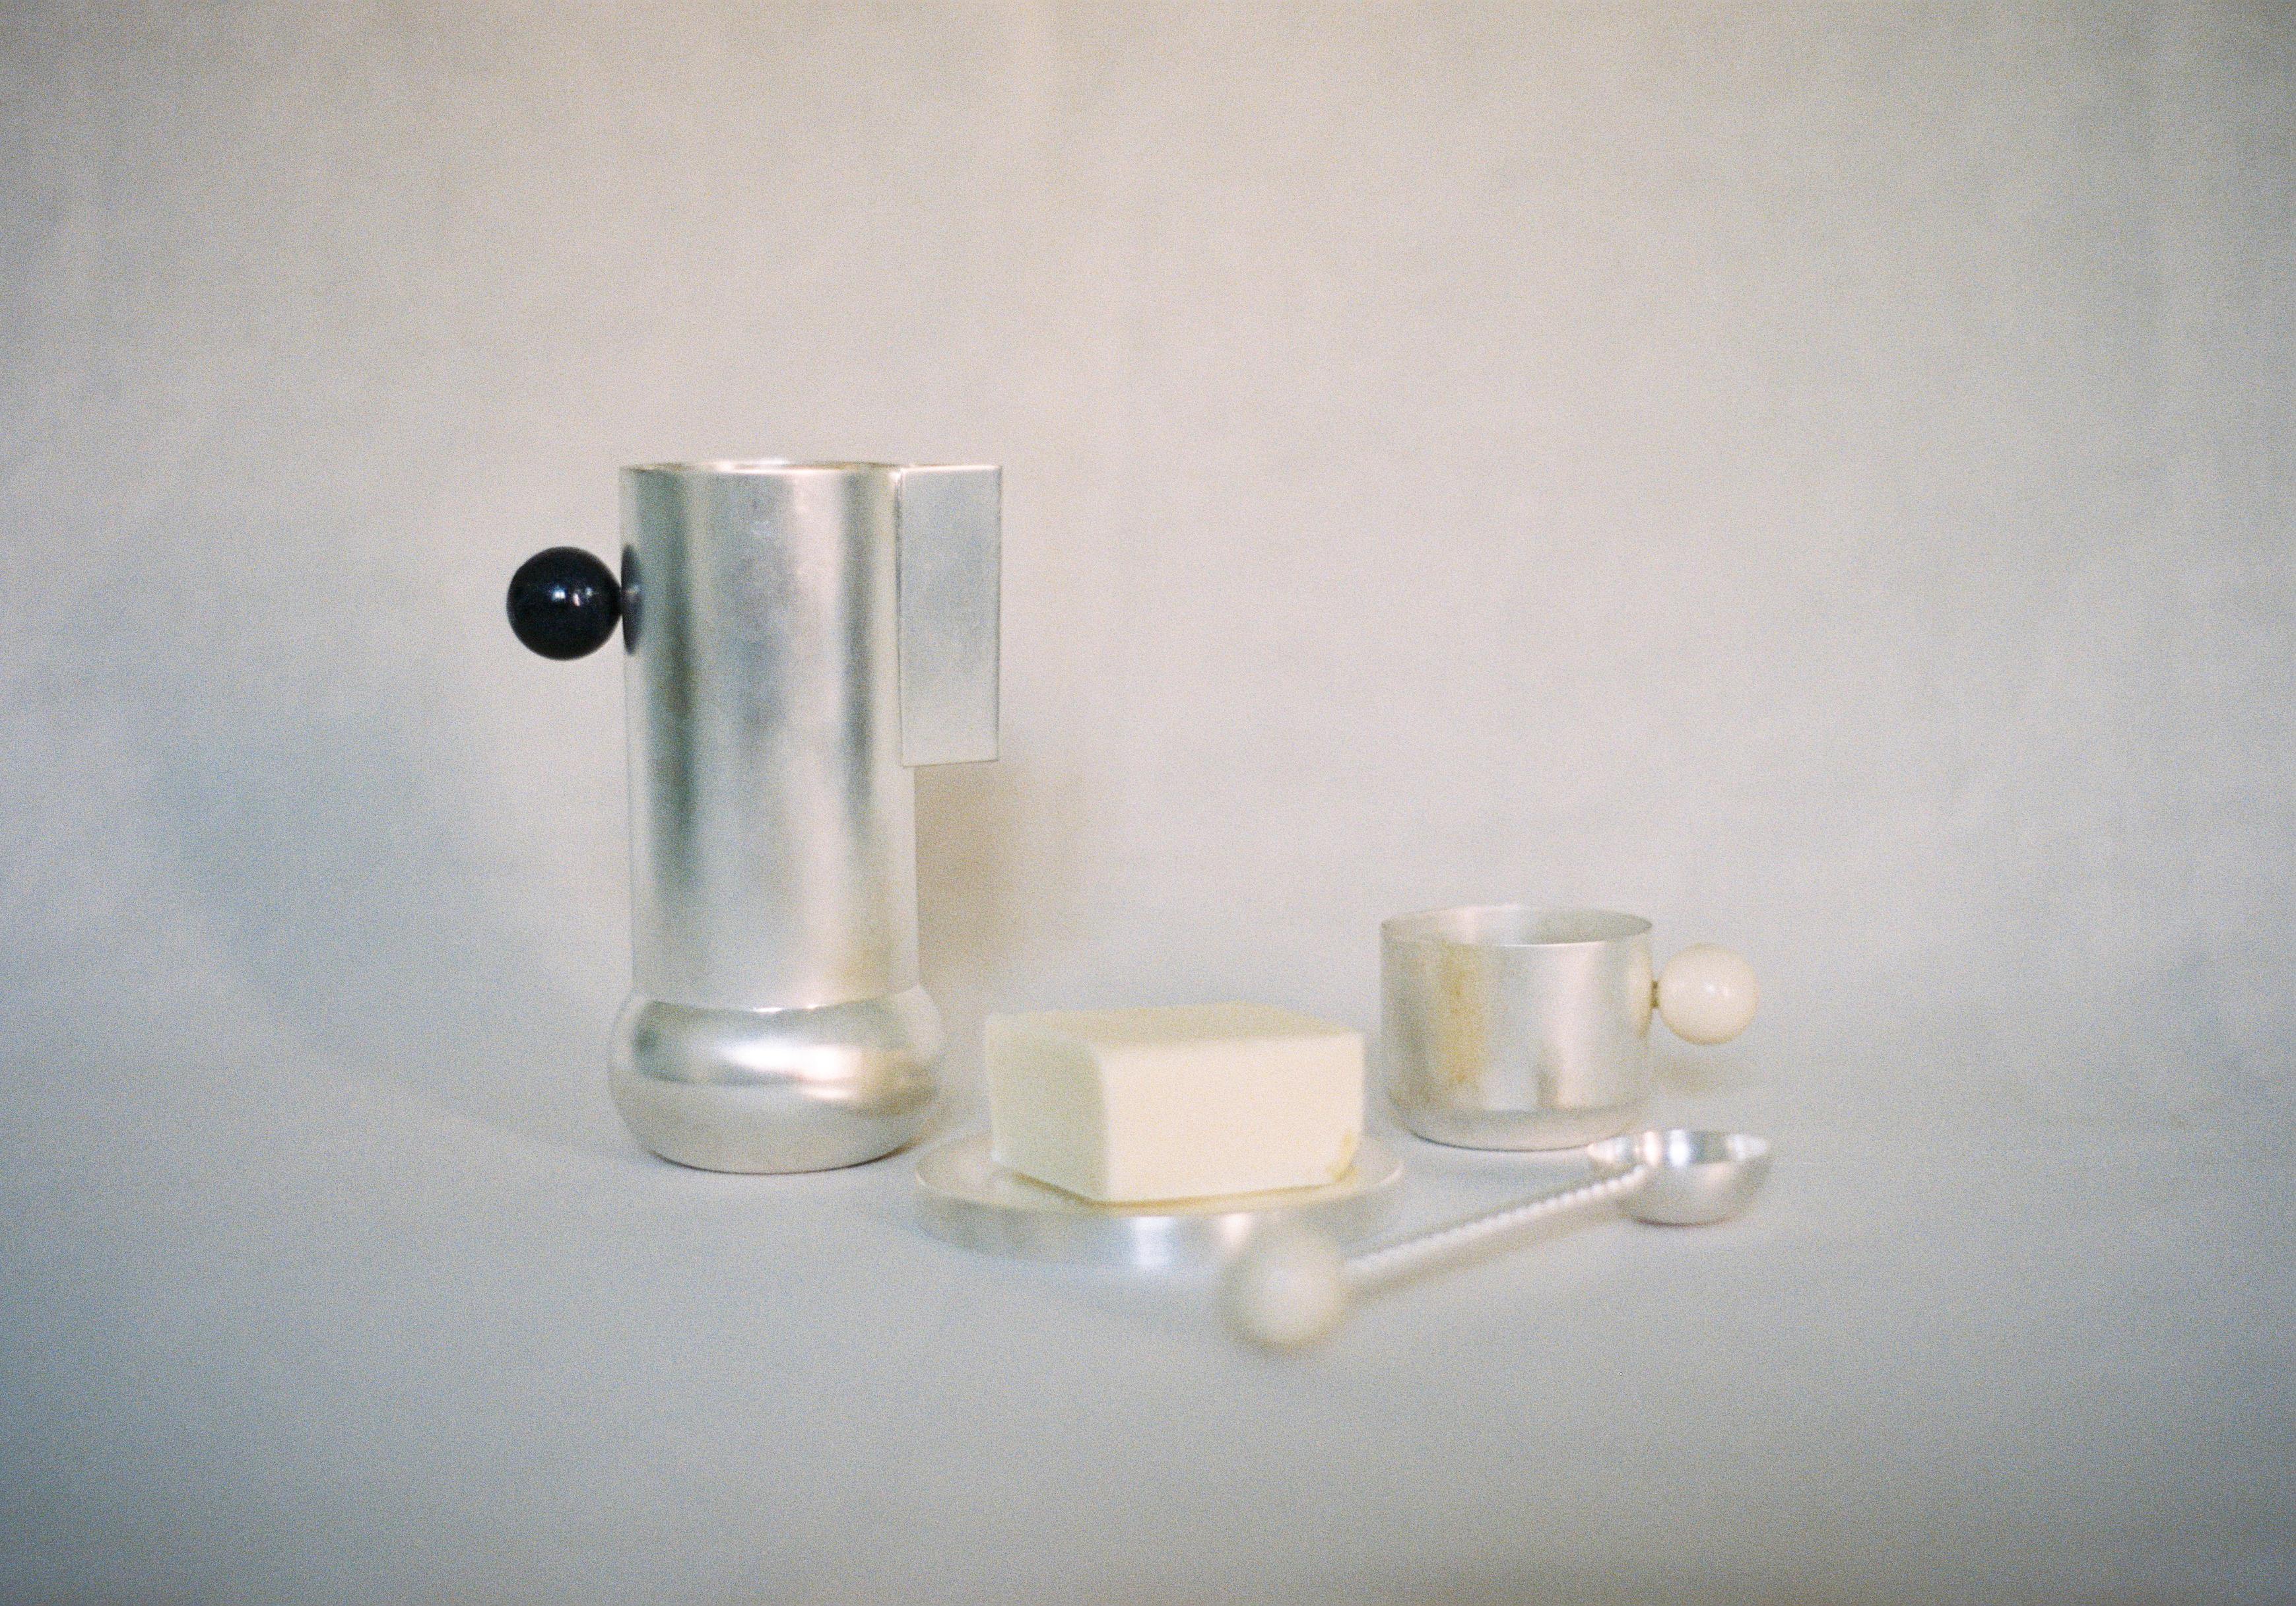 Améliorez votre rituel quotidien de thé ou de café avec notre exquise tasse Perla. Fabriquée à la main en laiton plaqué, sa silhouette géométrique se rétrécit à la base pour une esthétique épurée et minimale. L'exquise poignée en pierre de lave